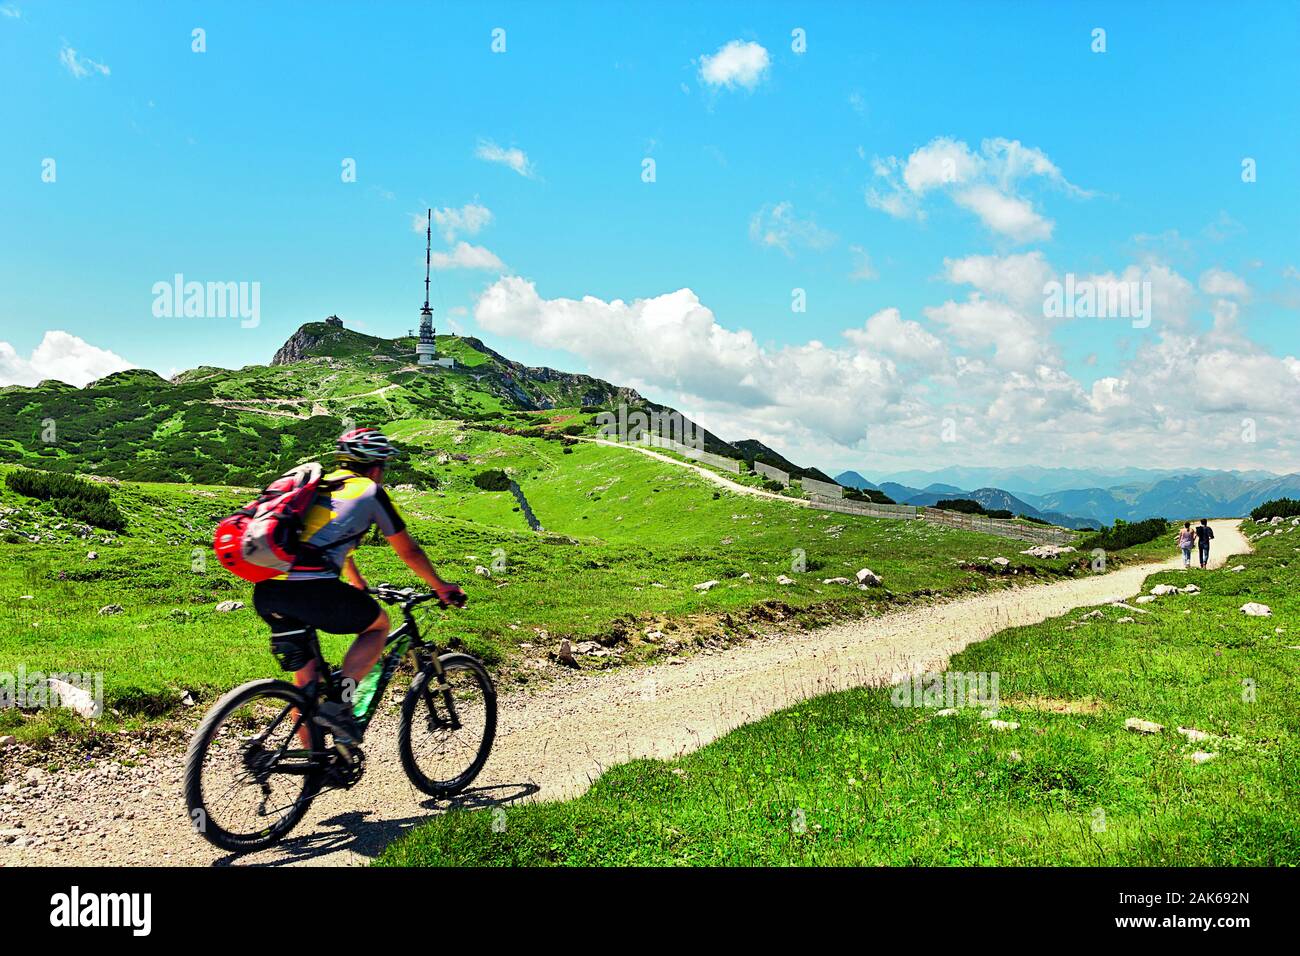 Villach: Bikder auf dem Dobratsch, Kärnten | Verwendung weltweit  Stockfotografie - Alamy